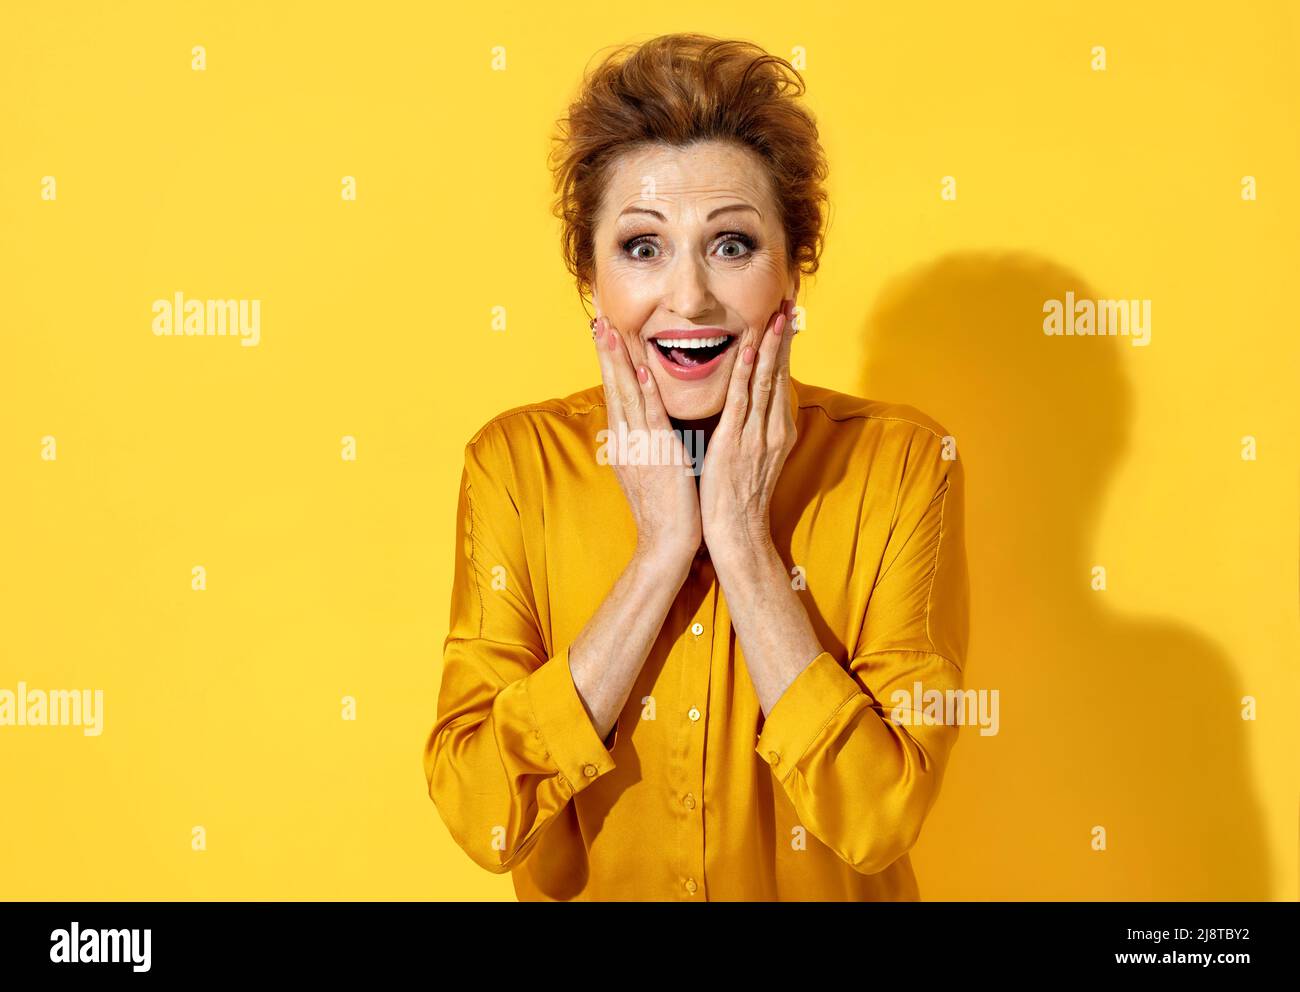 Positiv lächelnde Frau mit glücklichen Augen, hält die Hände nahe an ihr Gesicht. Foto von attraktiven älteren Frau in gelbem Hemd auf gelbem Hintergrund. Stockfoto